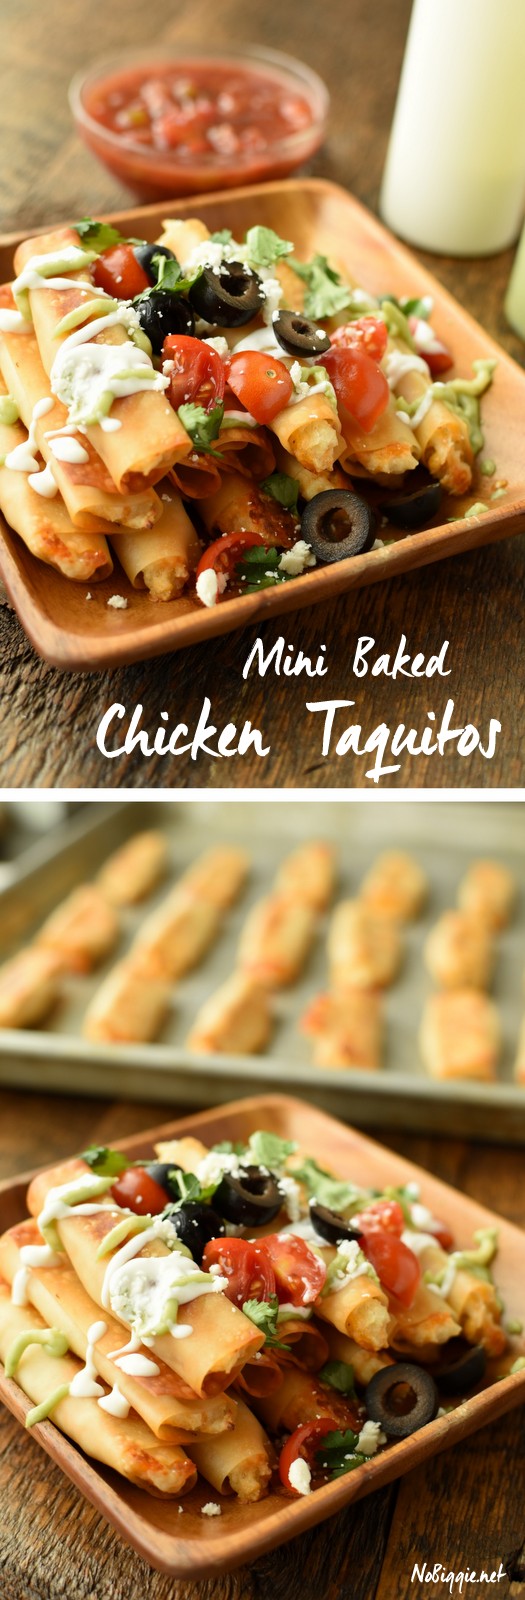 Mini Baked Chicken Taquitos | NoBiggie.net